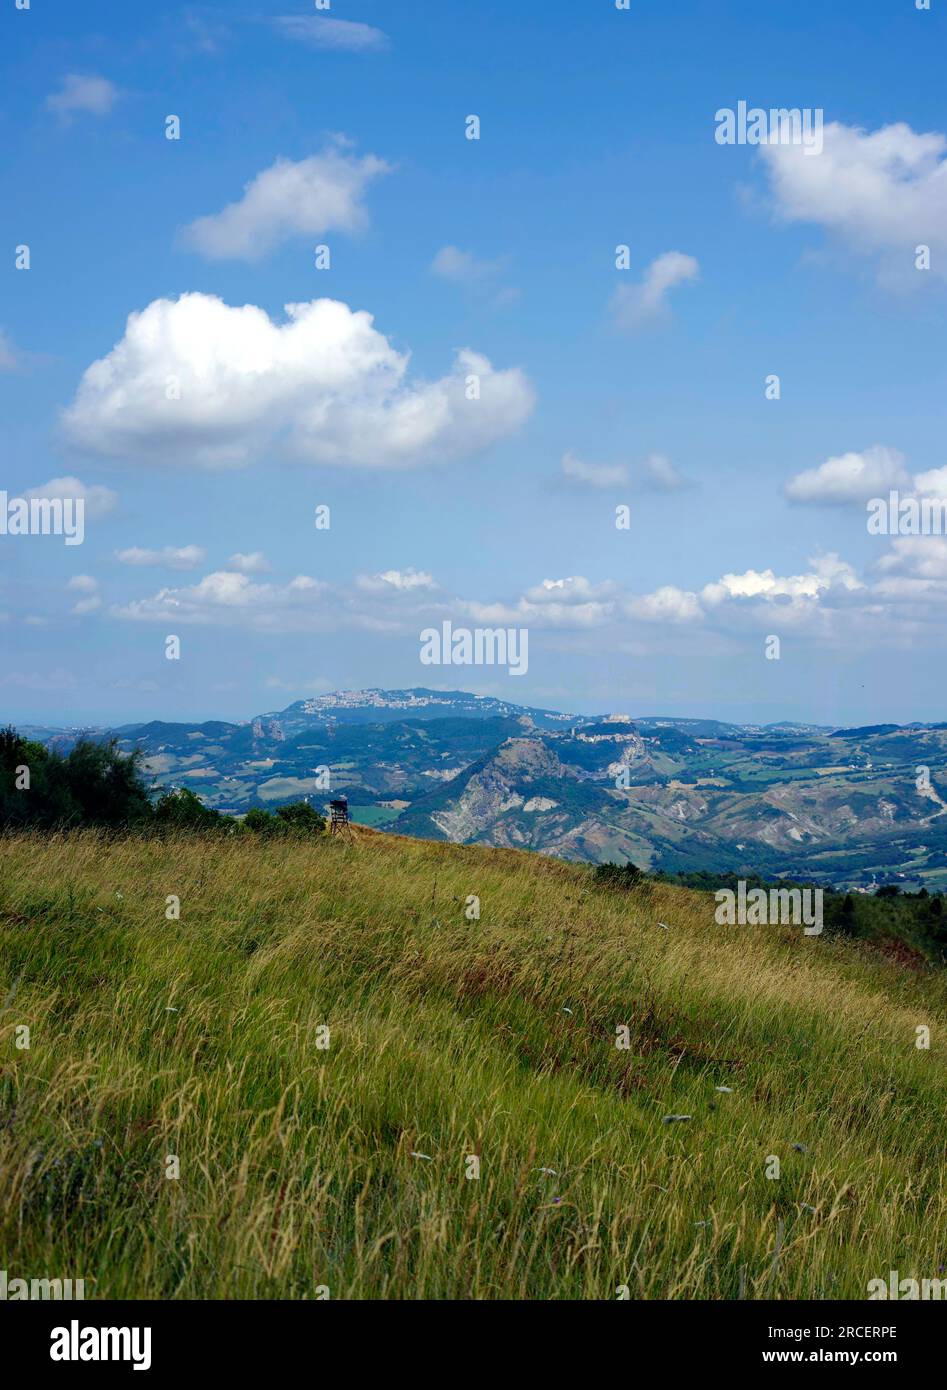 Foto panoramica con Rocca di Maioleto, Forte di San Leo e San Marino  sul Monte Titano nello sfondo Stock Photo